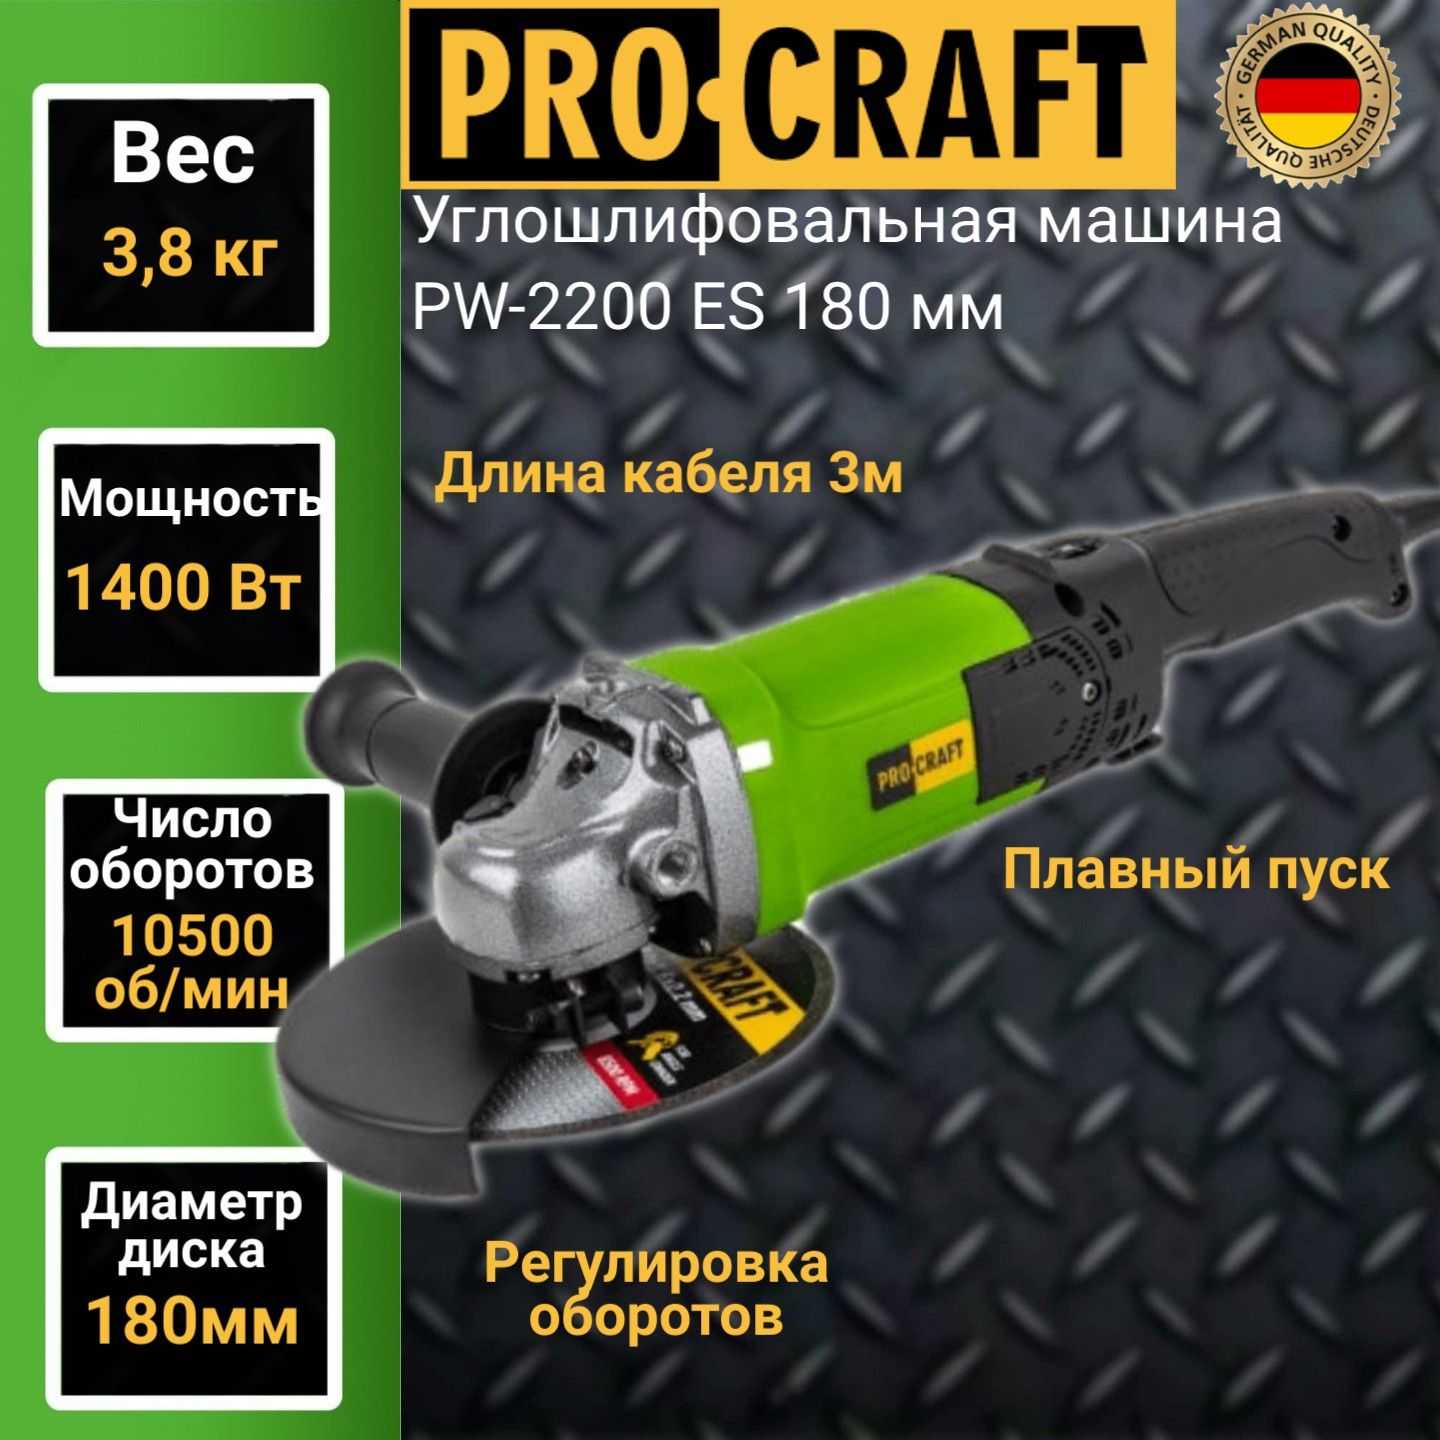 Углошлифовальная машина болгарка Procraft PW-2200ЕS, 180мм круг, 1400Вт, 10500об/мин